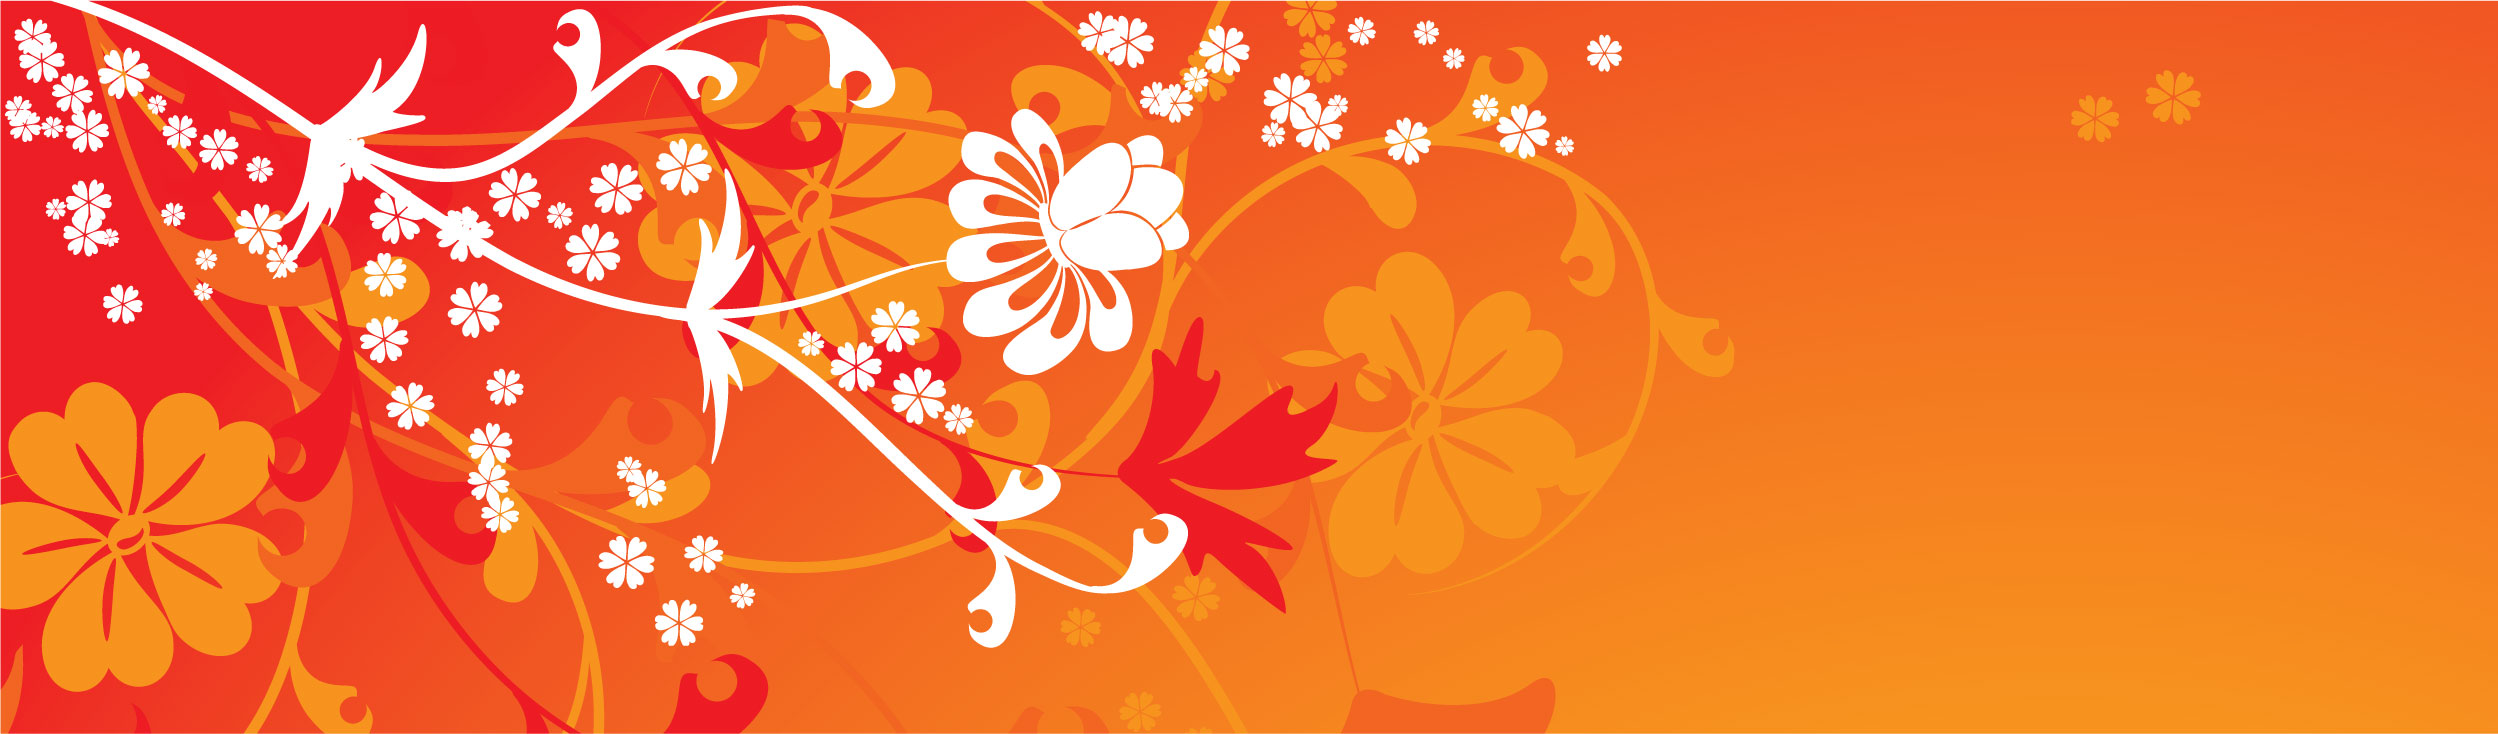 オレンジ色の花のイラスト フリー素材 壁紙 背景no 212 赤 オレンジ 白 茎葉